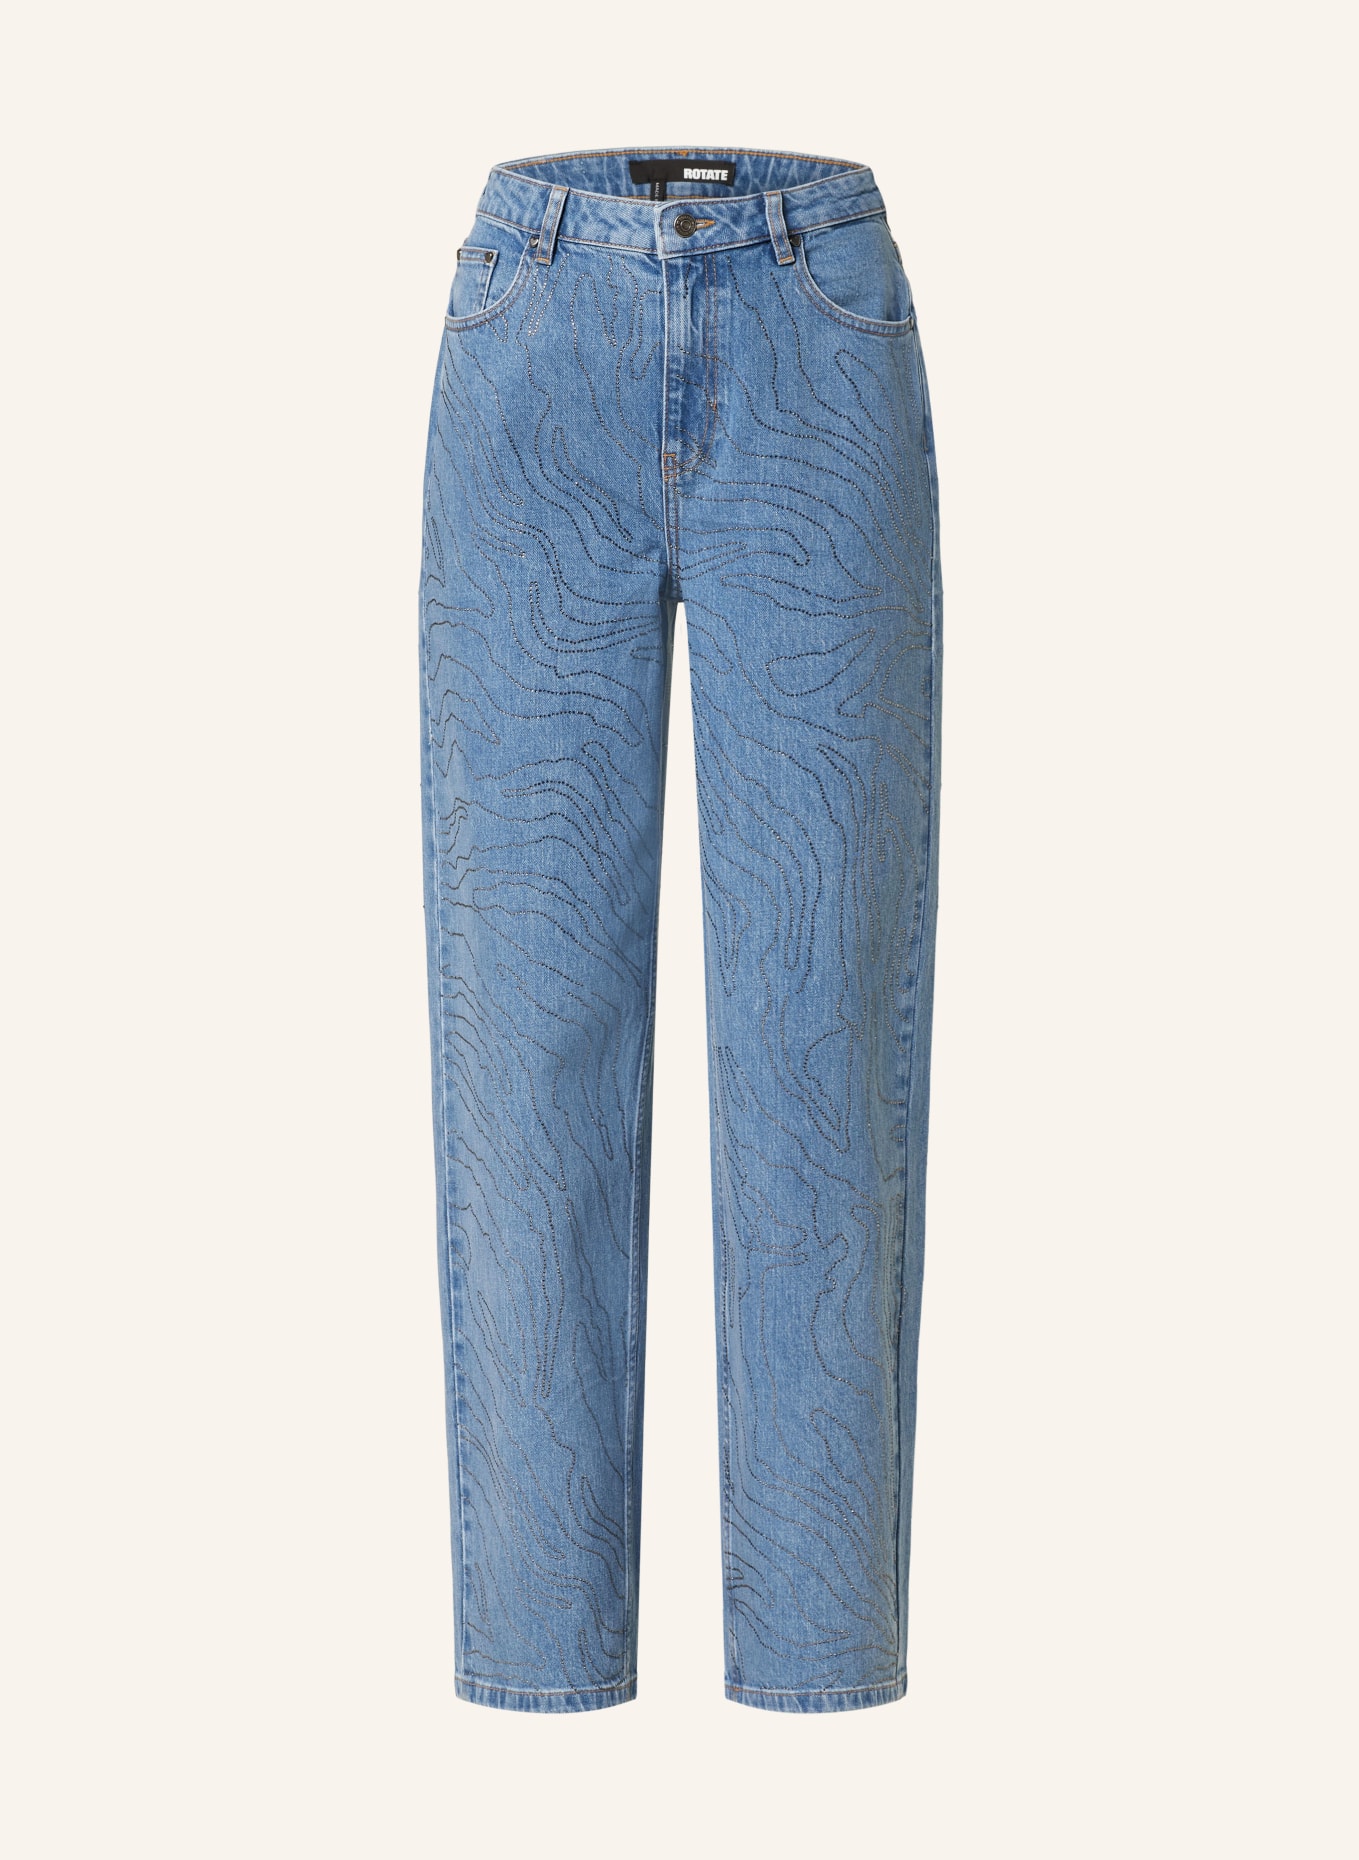 ROTATE Straight Jeans mit Schmucksteinen, Farbe: 1468 Light Blue Denim (Bild 1)